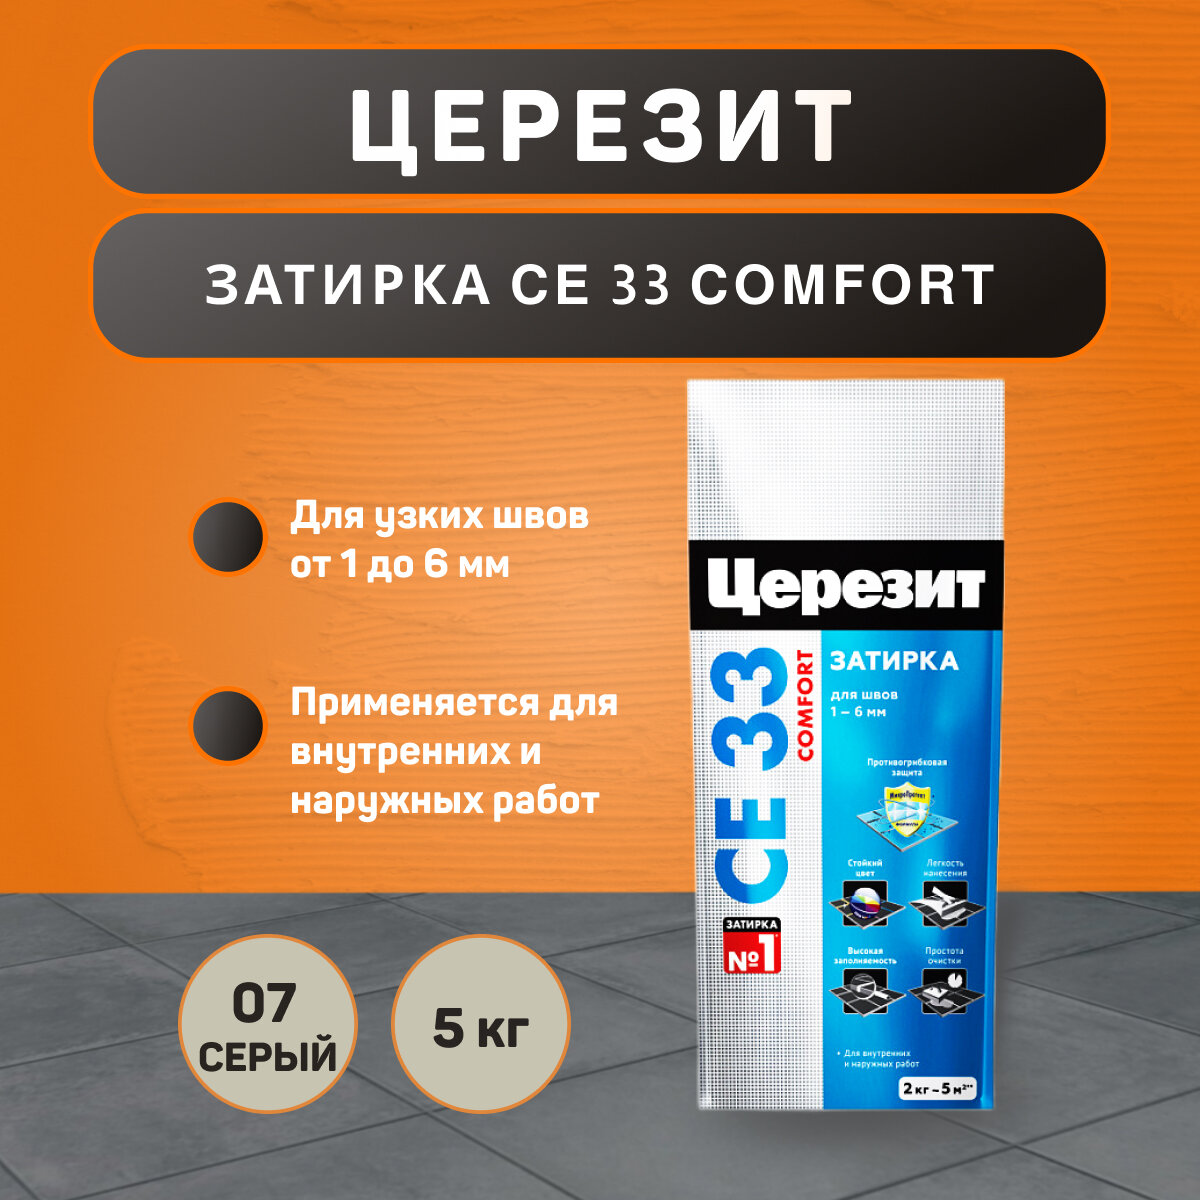 Затирка Ceresit CE 33 Comfort №07 серая 5 кг